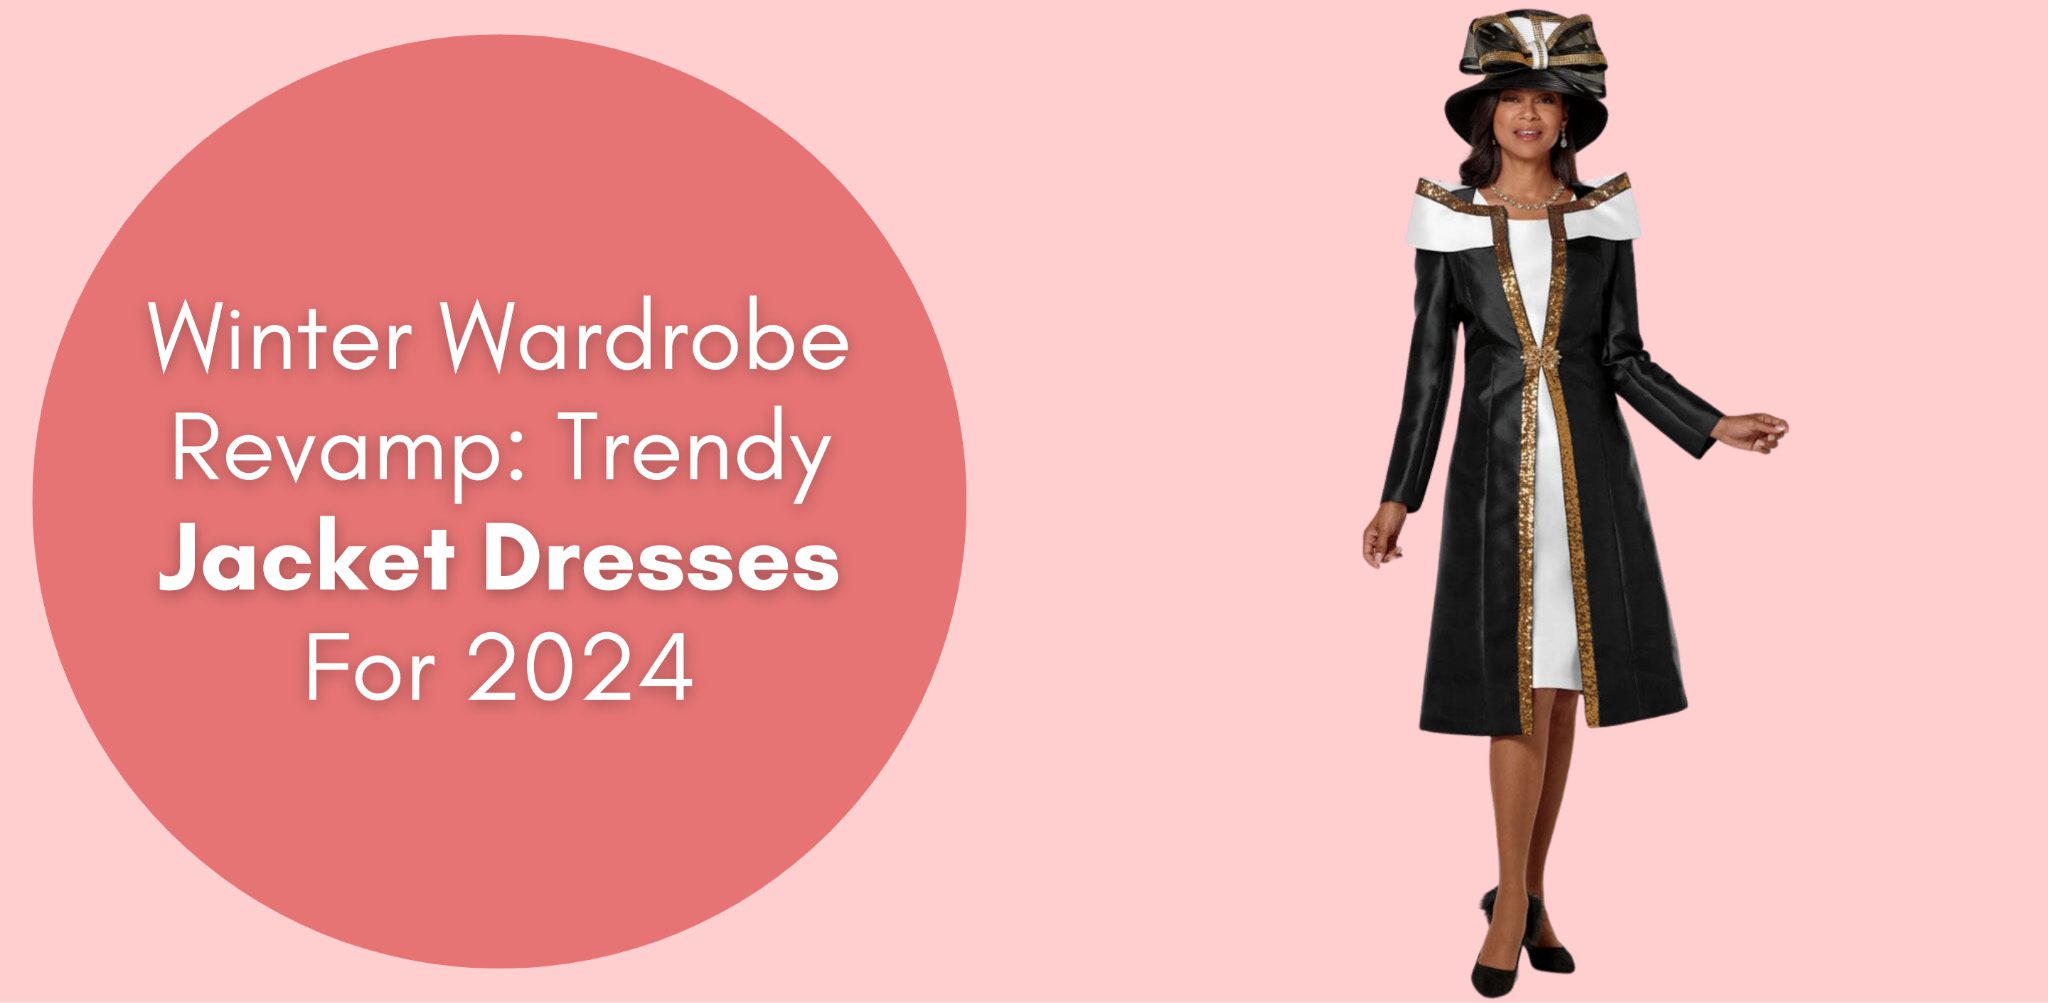 Winter Wardrobe Revamp: Trendy Jacket Dresses For 2024